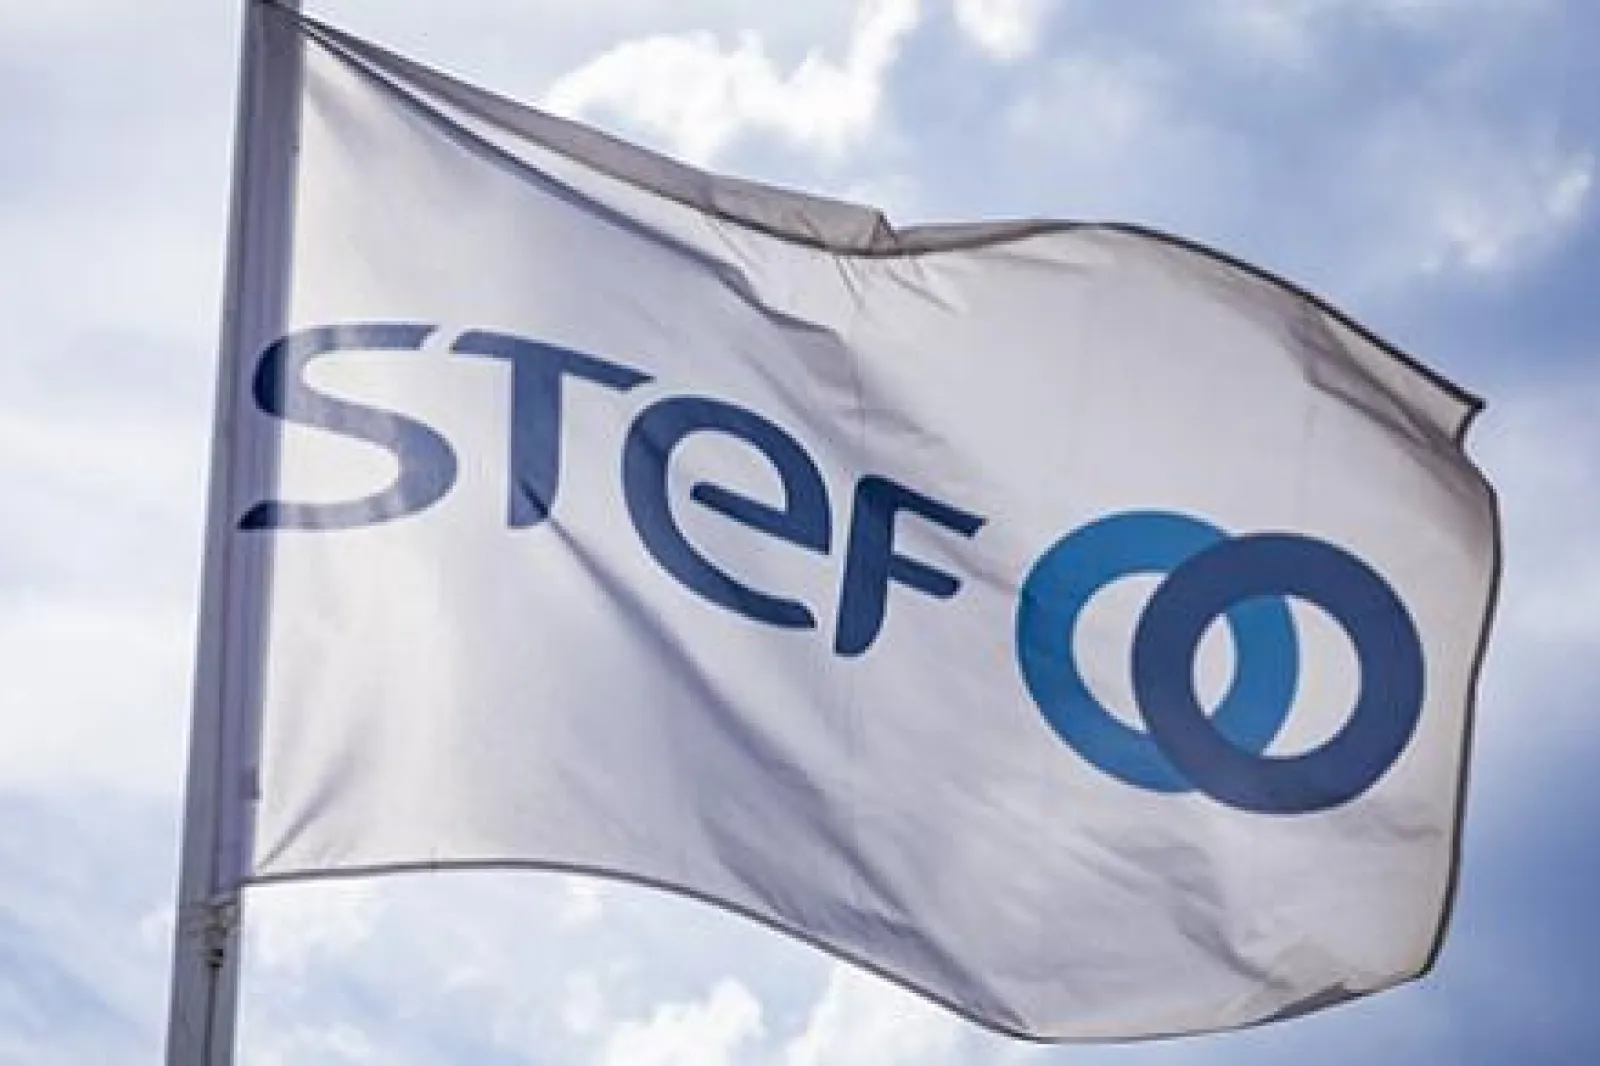 stef logo